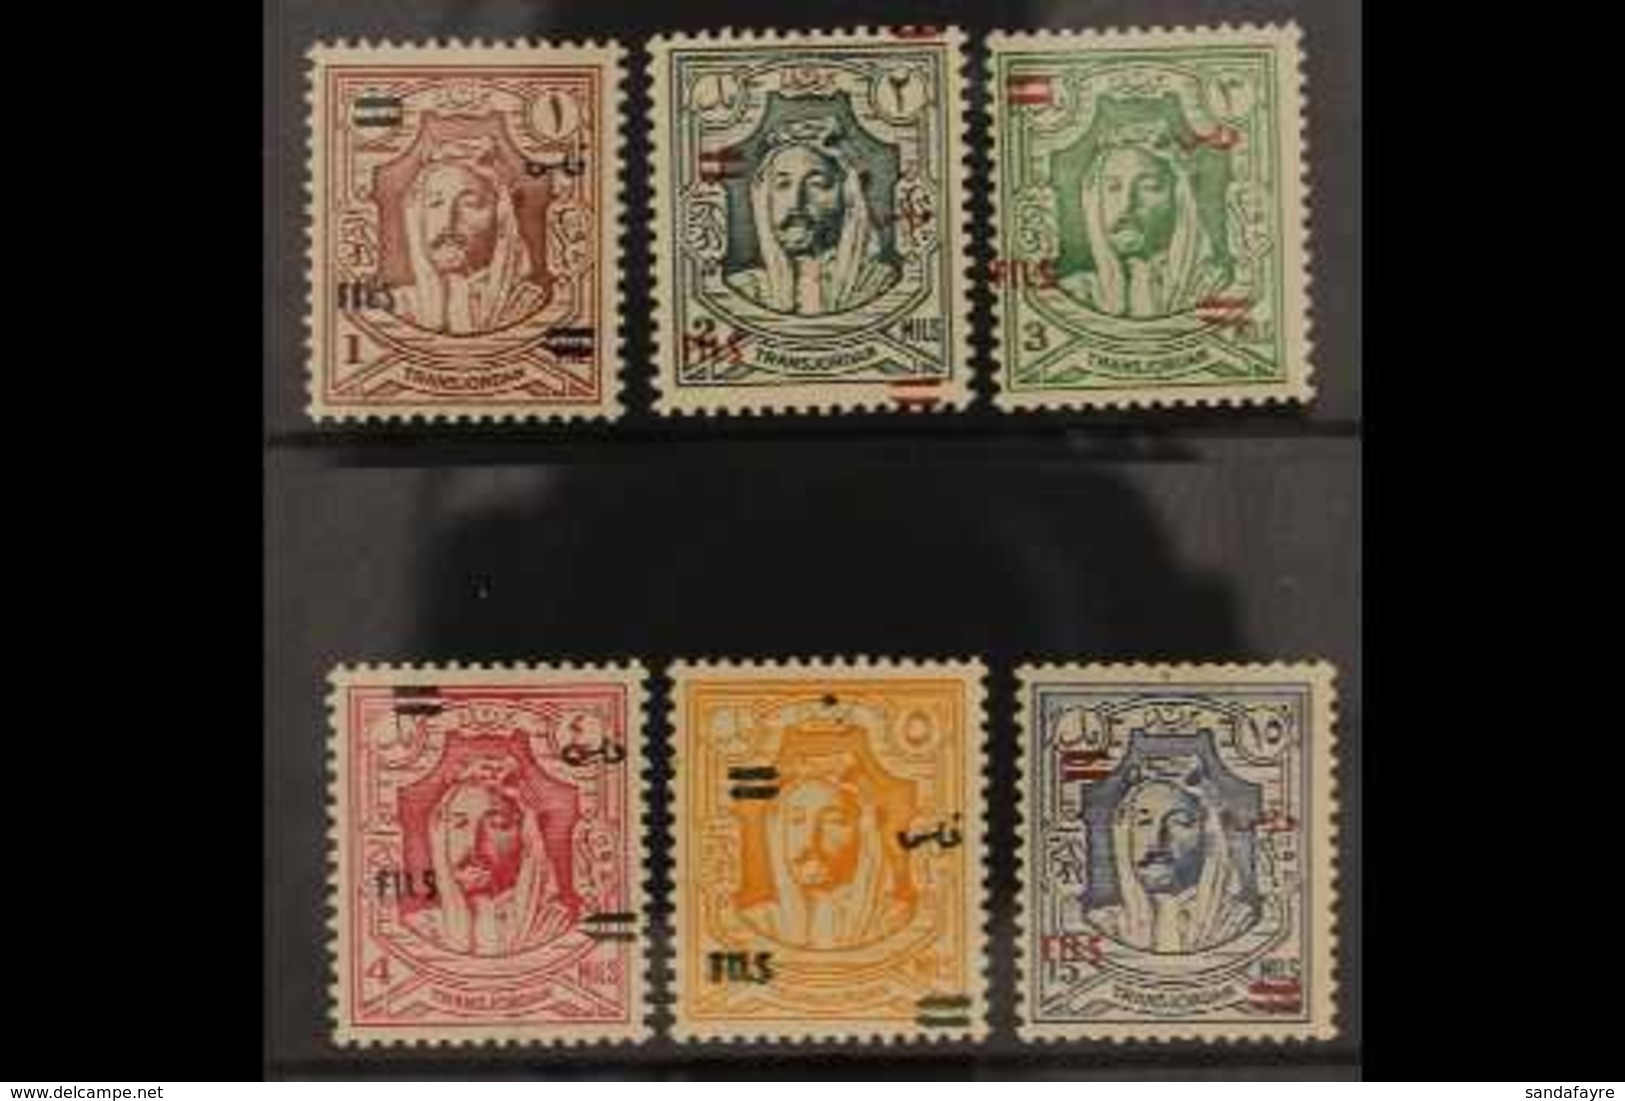 1952 Emir Complete No Wmk Overprinted Set, SG 307/12, Never Hinged Mint (6 Stamps) For More Images, Please Visit Http:// - Jordanien